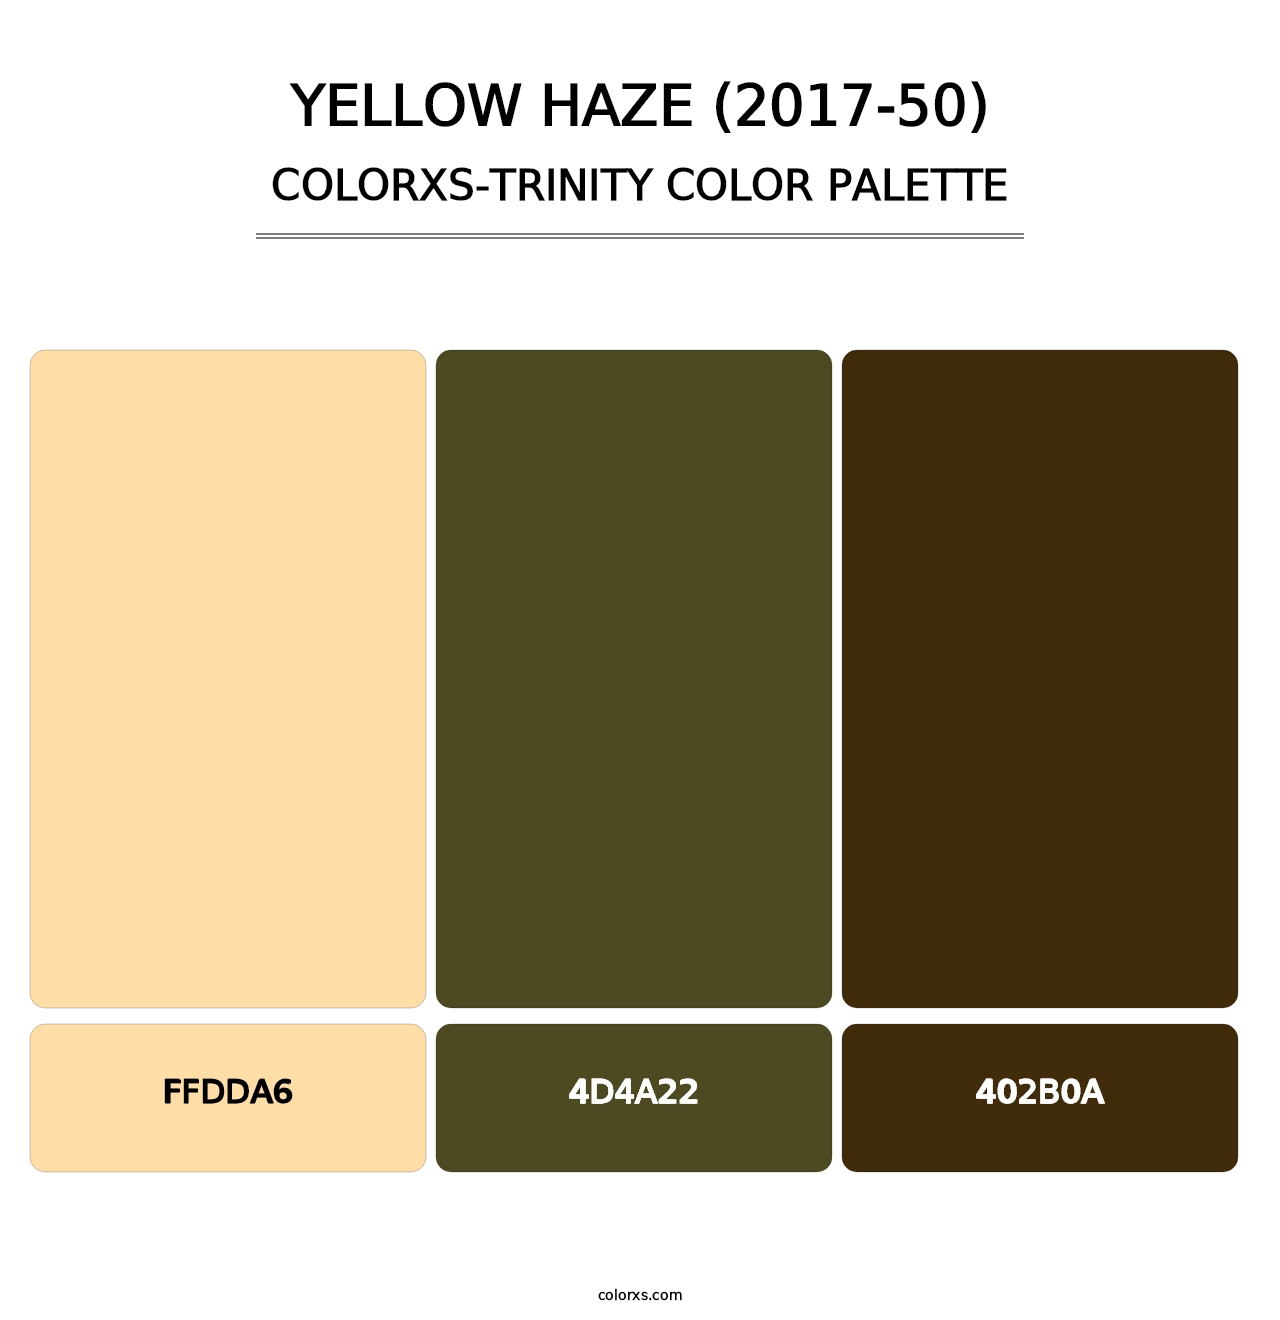 Yellow Haze (2017-50) - Colorxs Trinity Palette